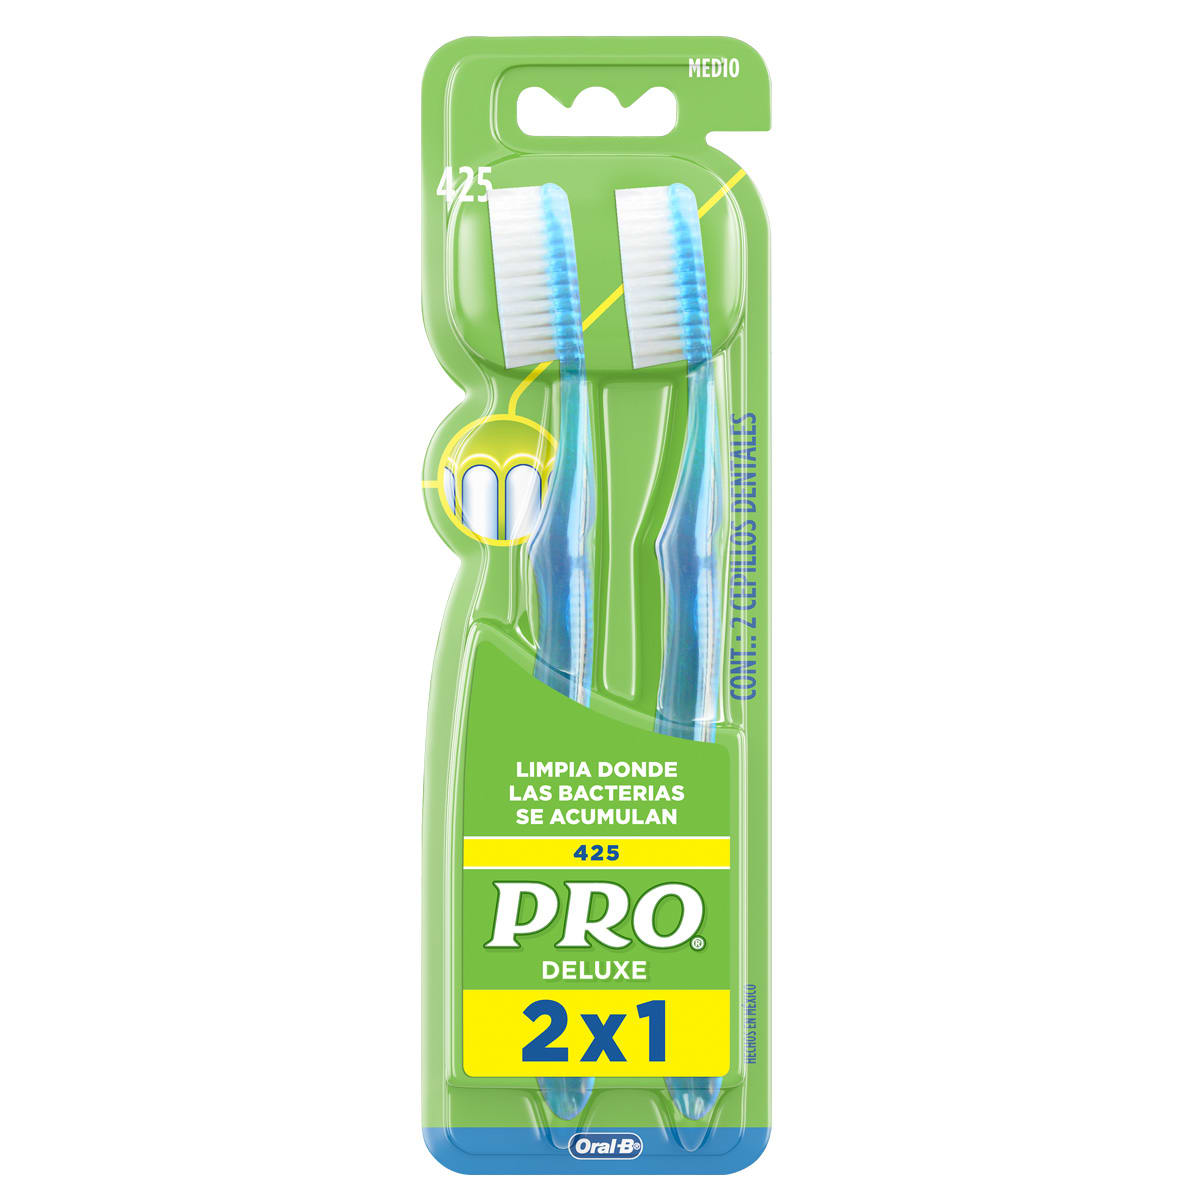 Cepillo de dientes PRO Deluxe 425 